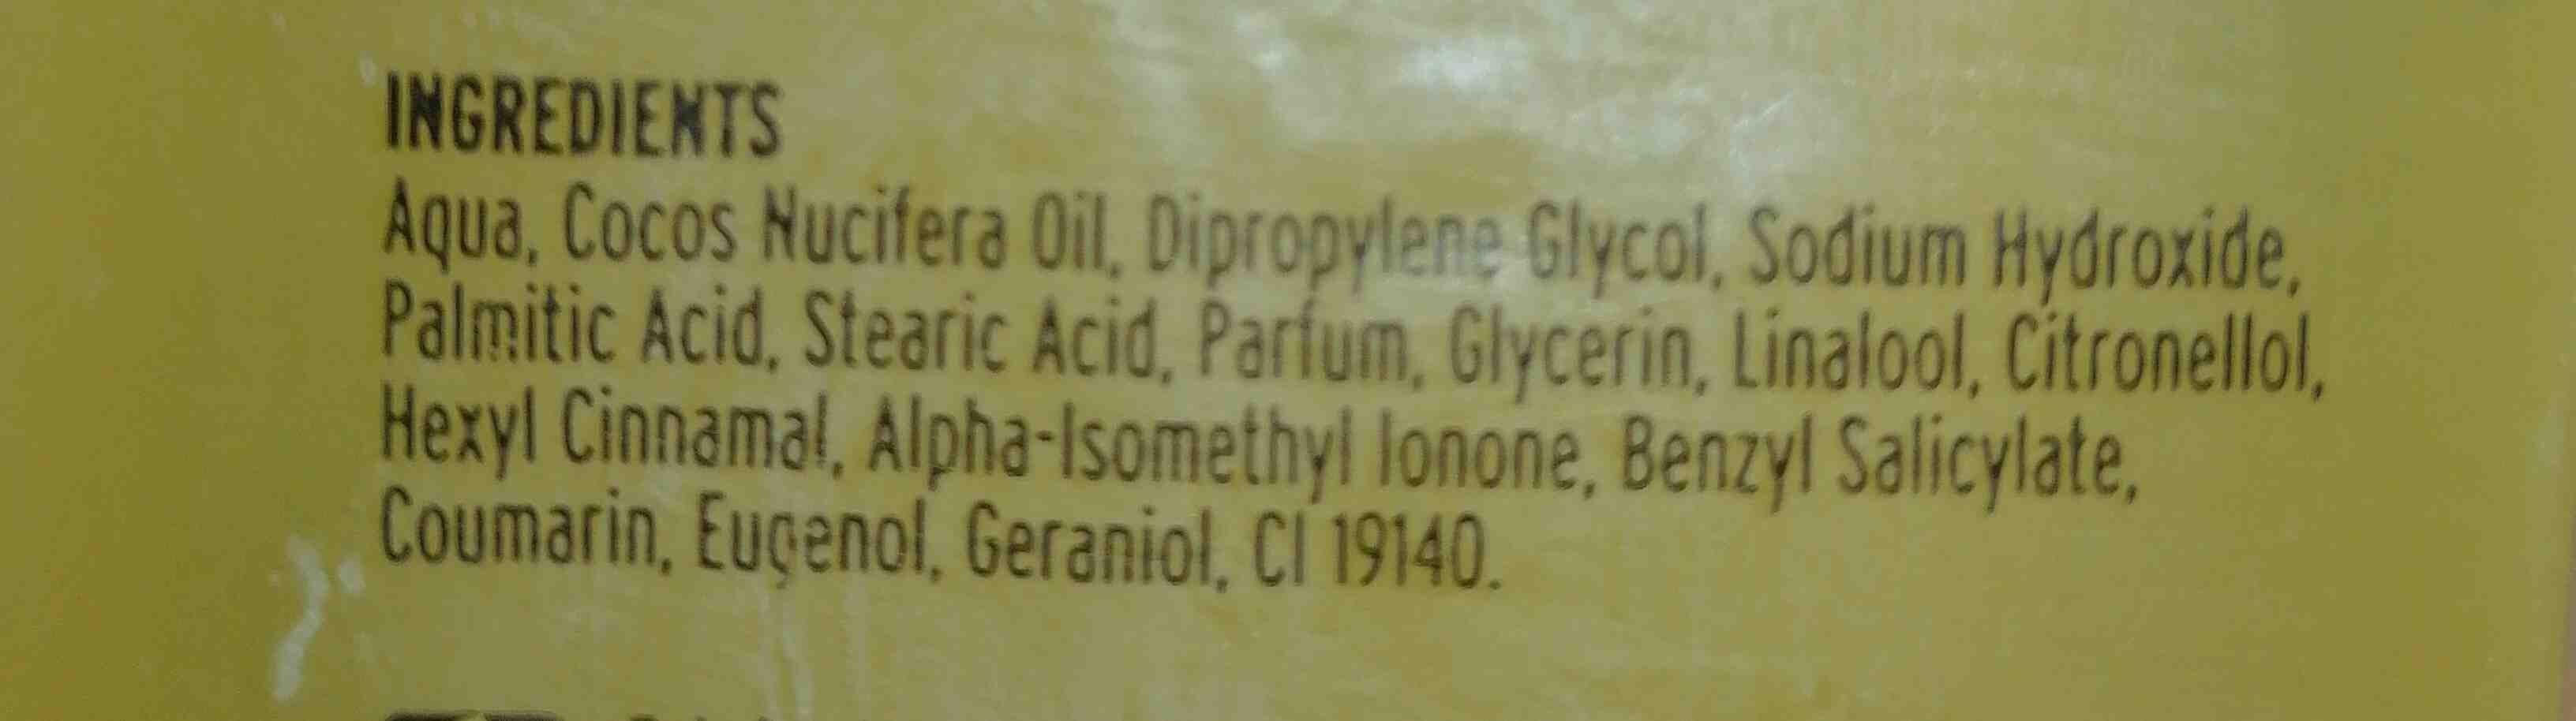 Belle glicerina jabon - Ingredients - en